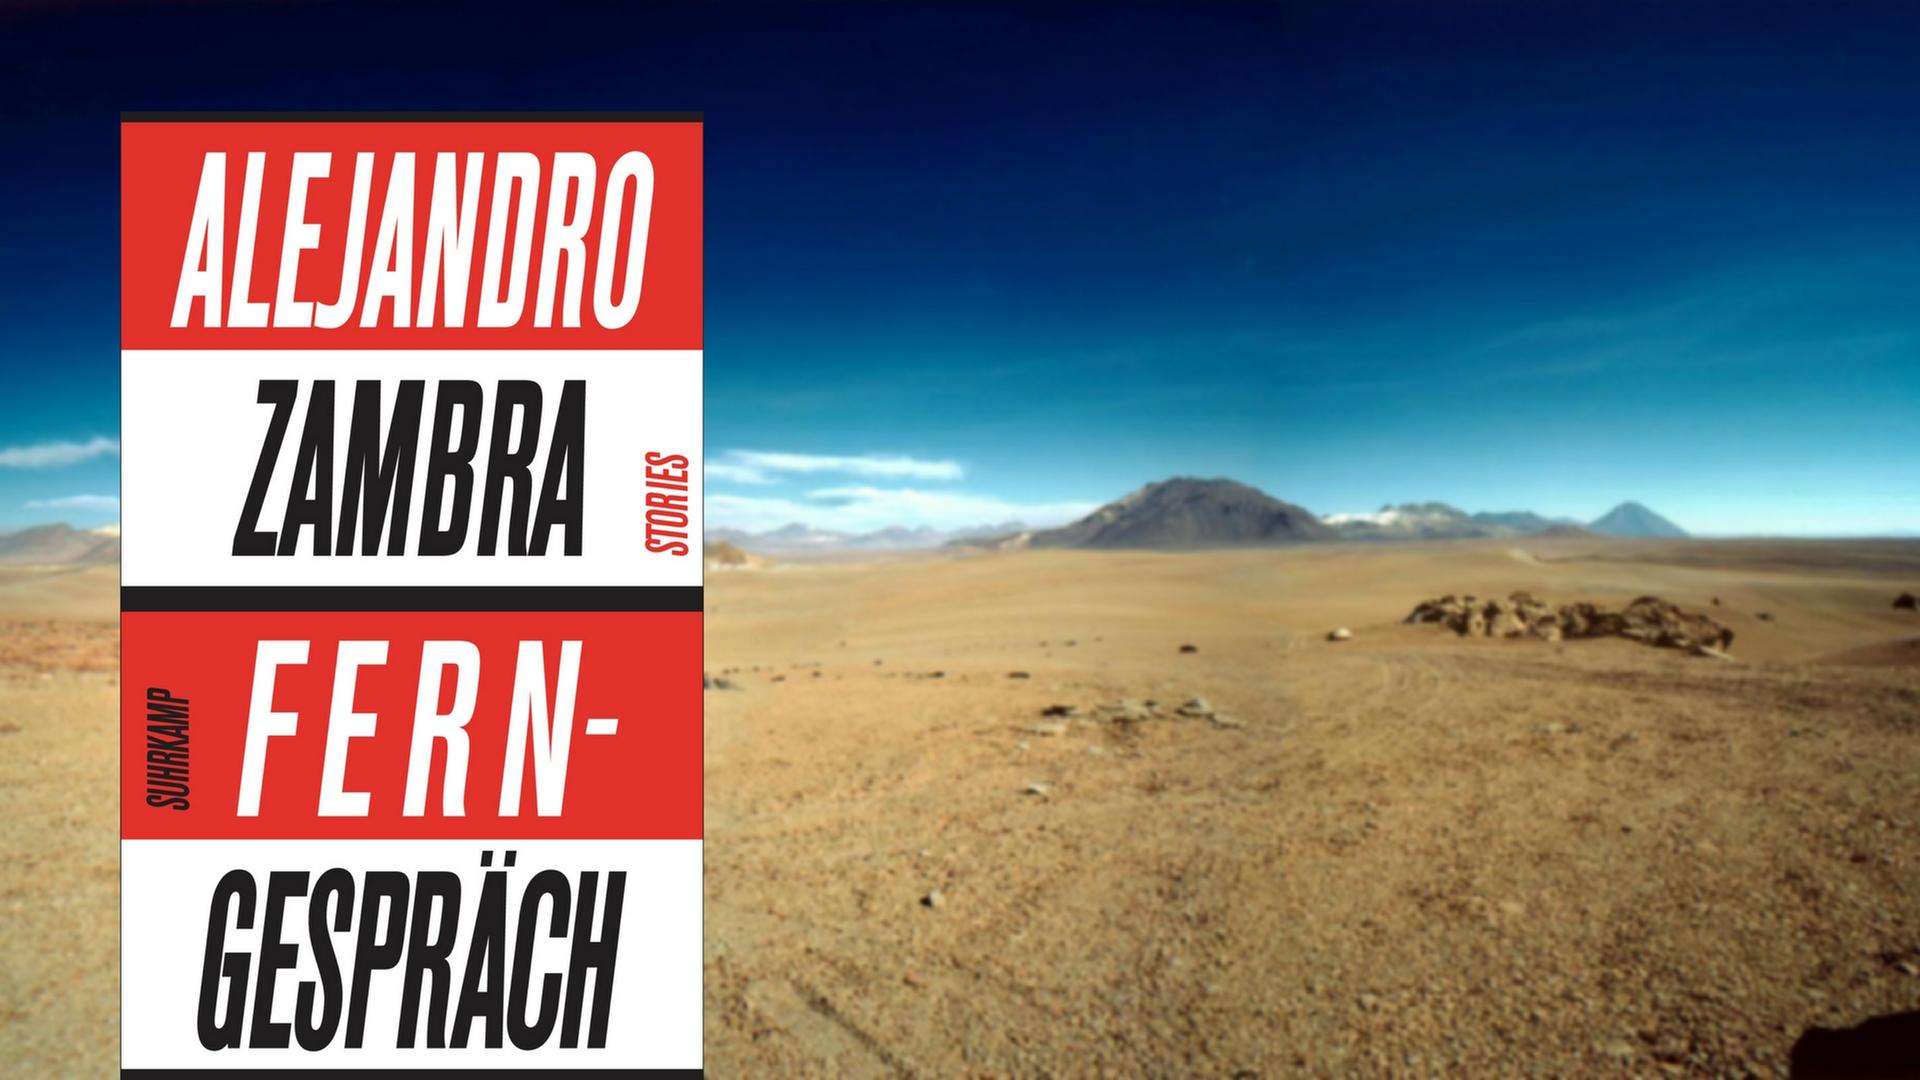 Das Buchcover von „Ferngespräch“ montiert vor ein Bild der chilenischen Wüste.